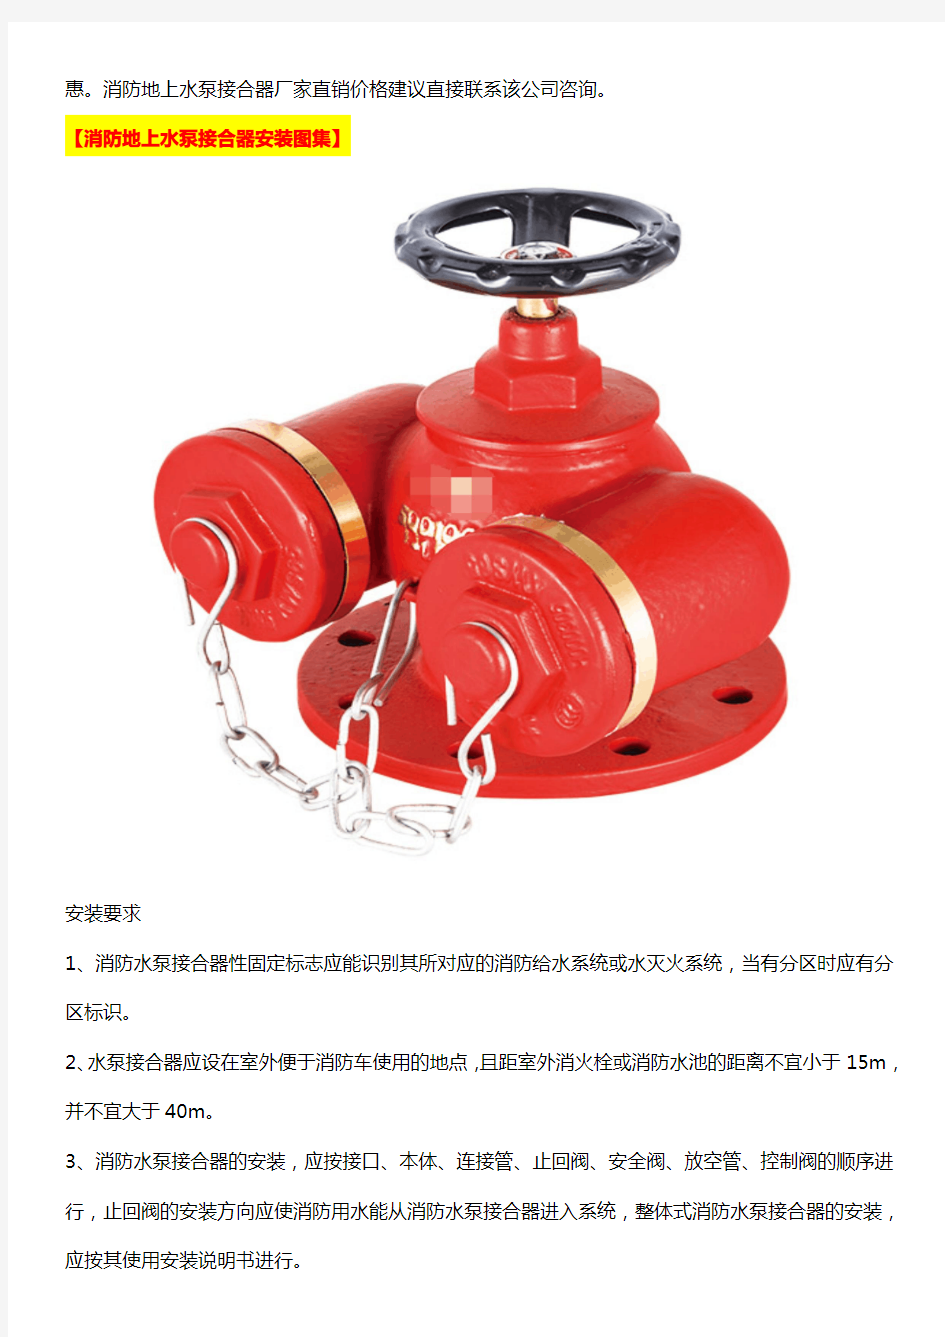 消防地上水泵接合器厂家直销价格_消防地上水泵接合器安装图集